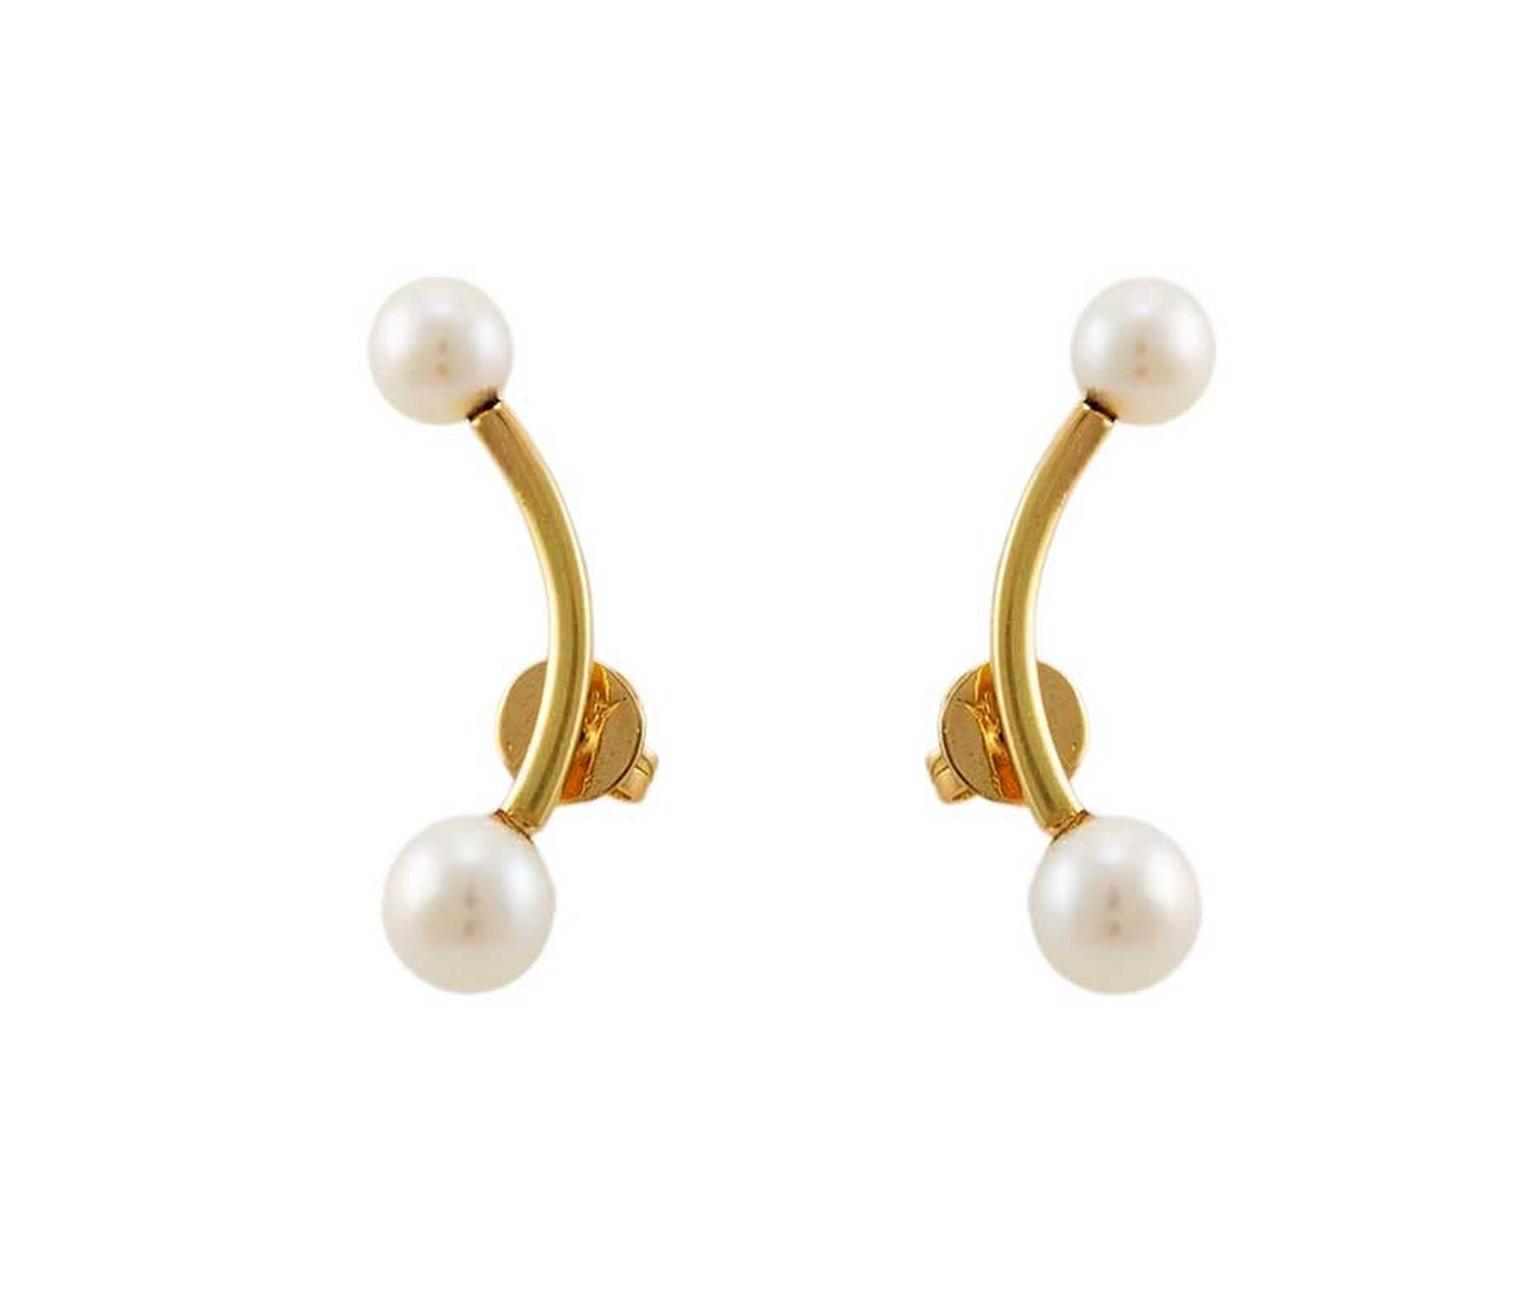 Ana Khouri pearl earrings in gold.